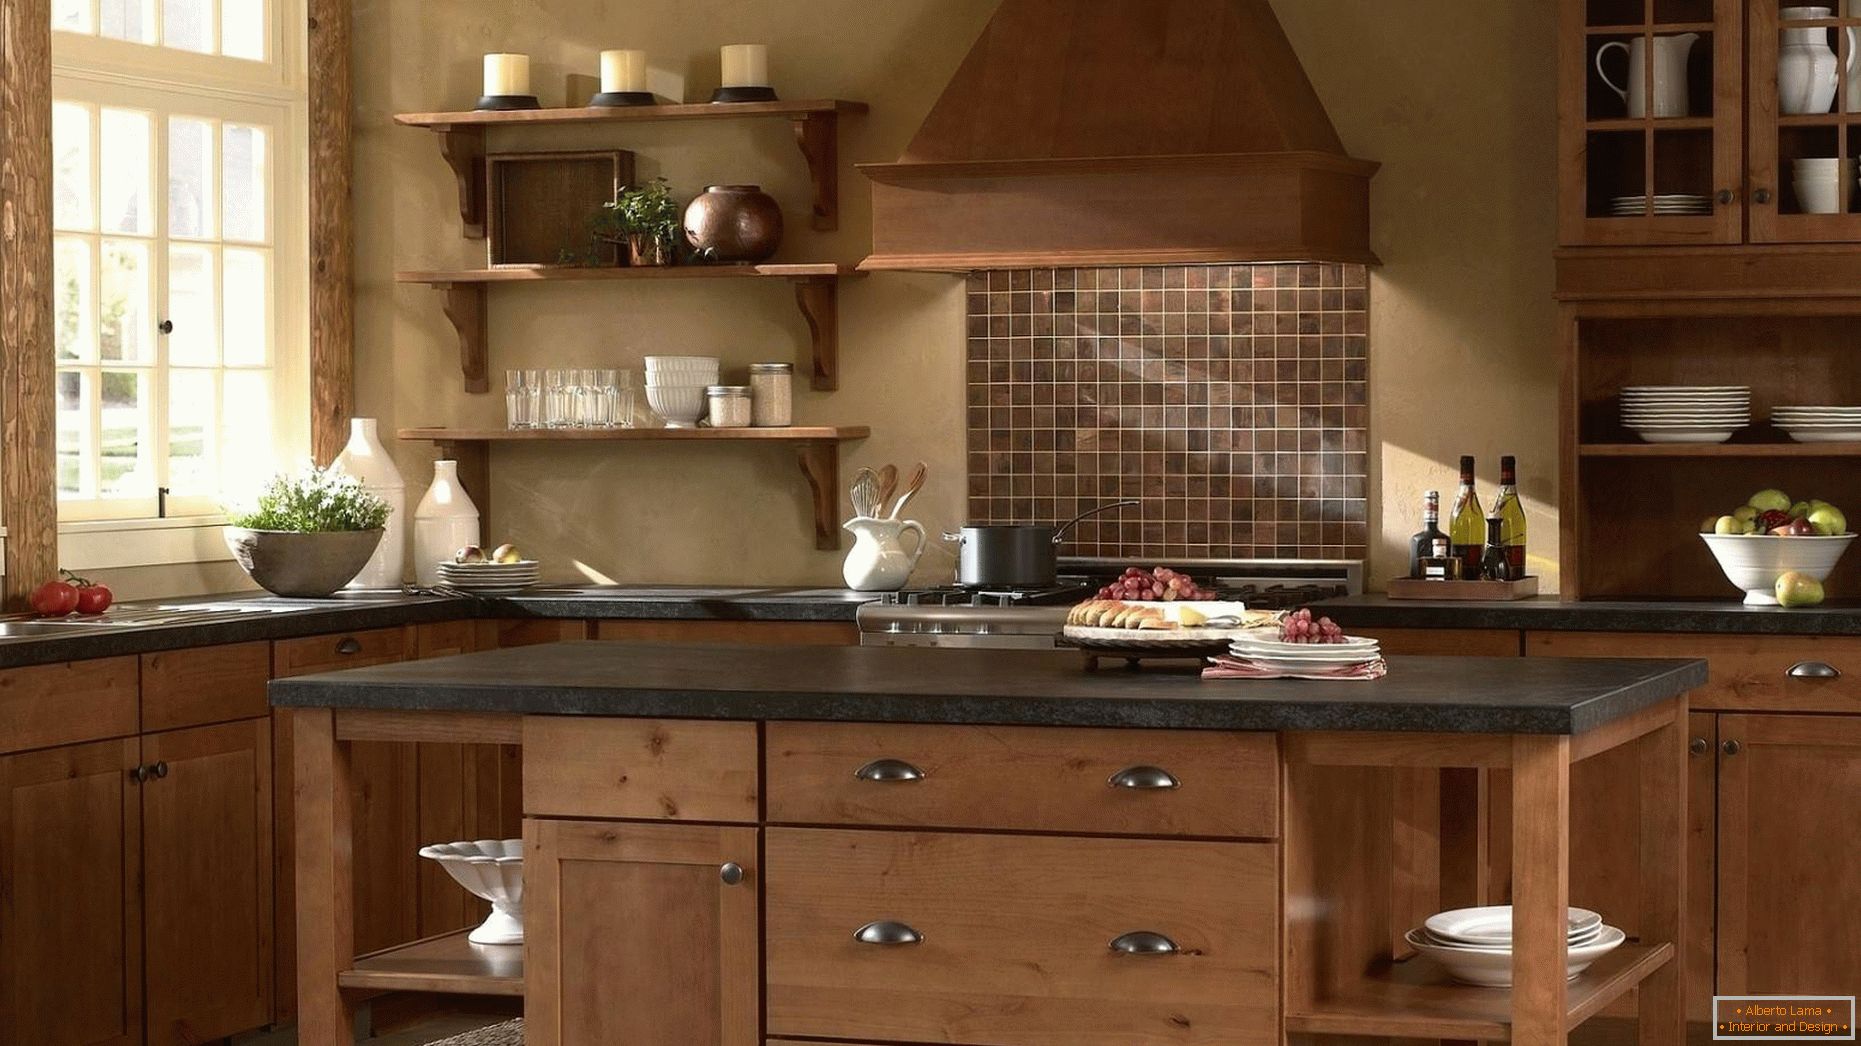 Kuhinje iz lesa so klasične!